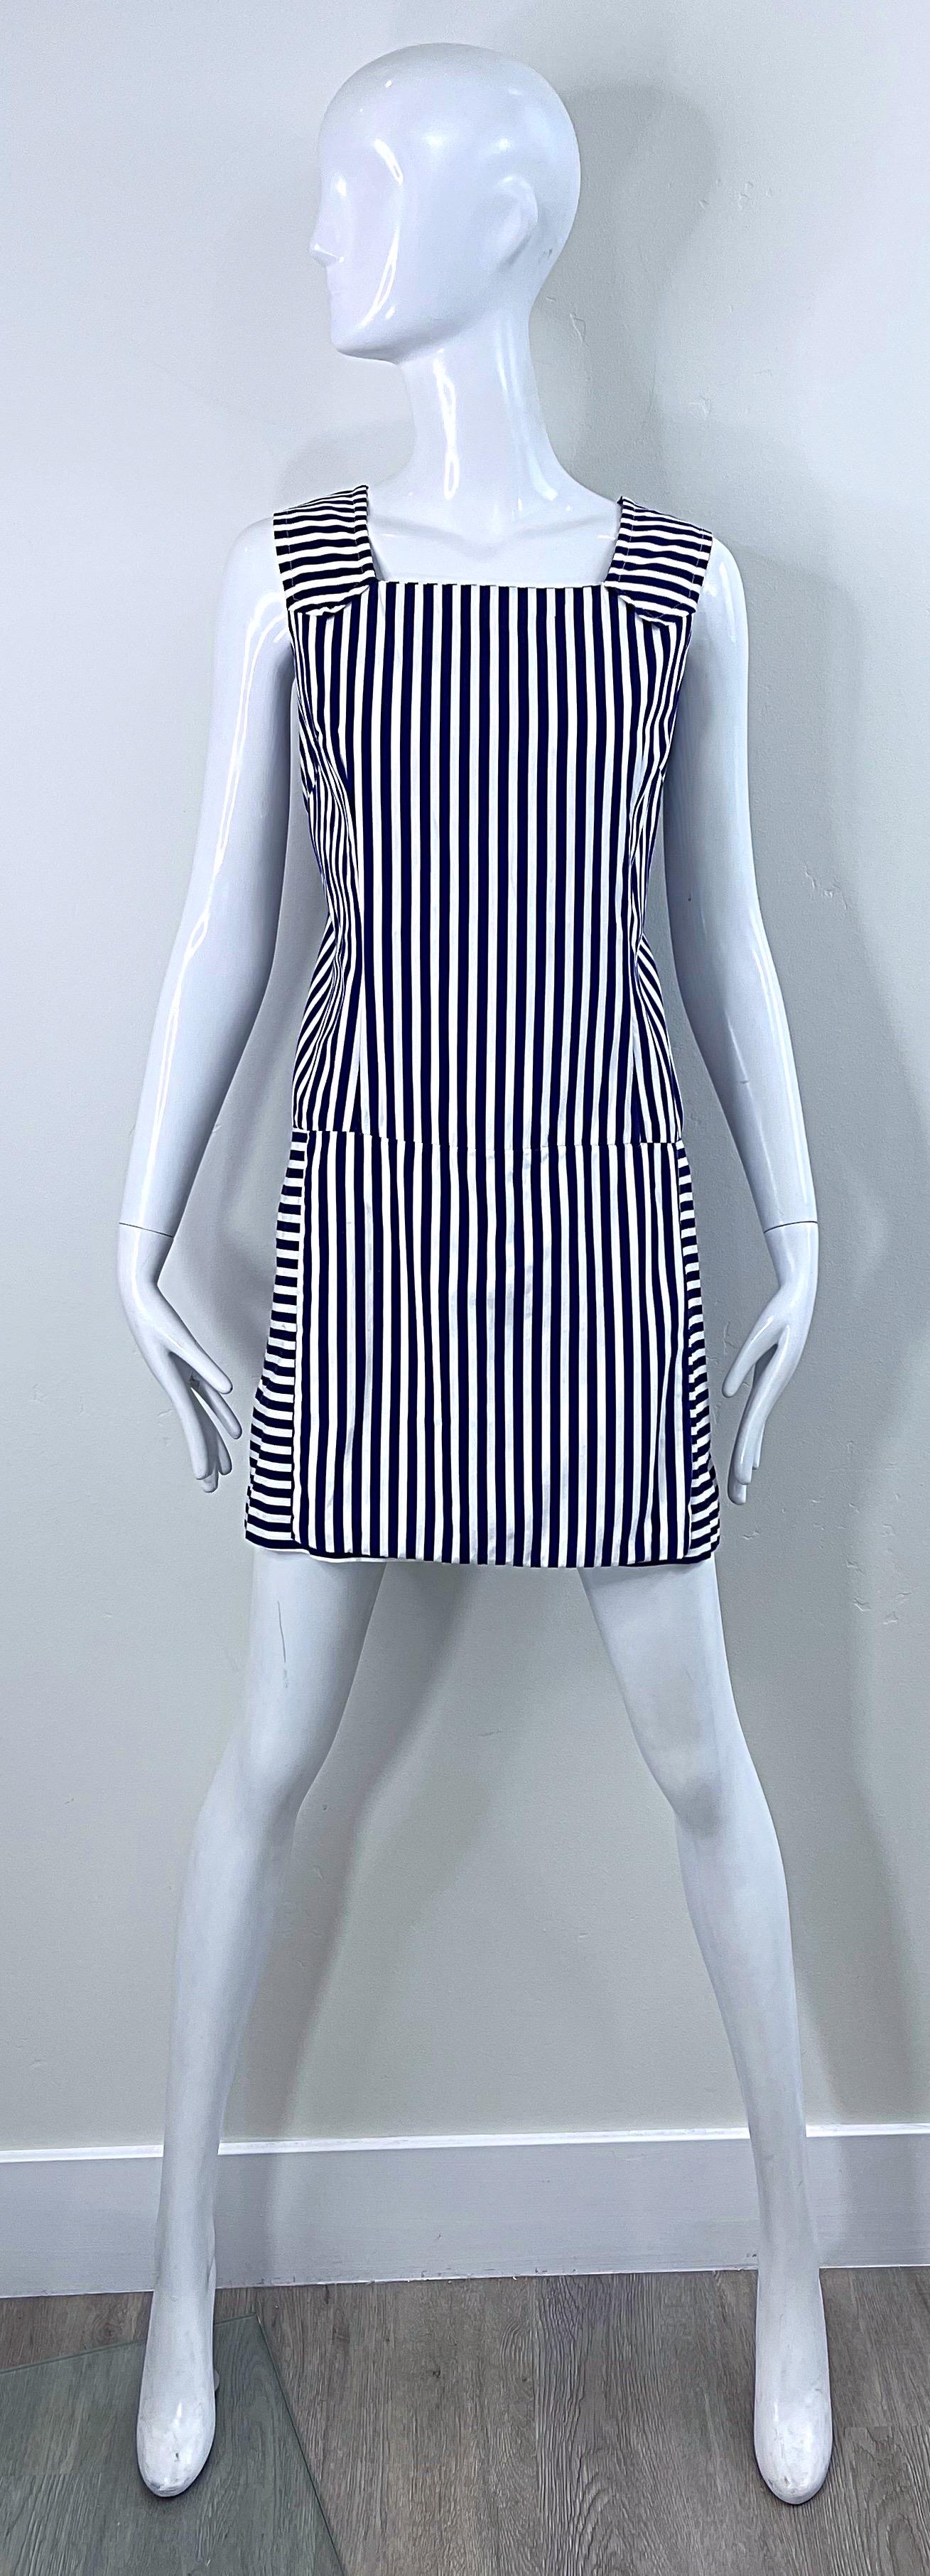 1960s Romper Large Size Navy + White Striped Cotton Vintage 60s Skort Dress For Sale 7